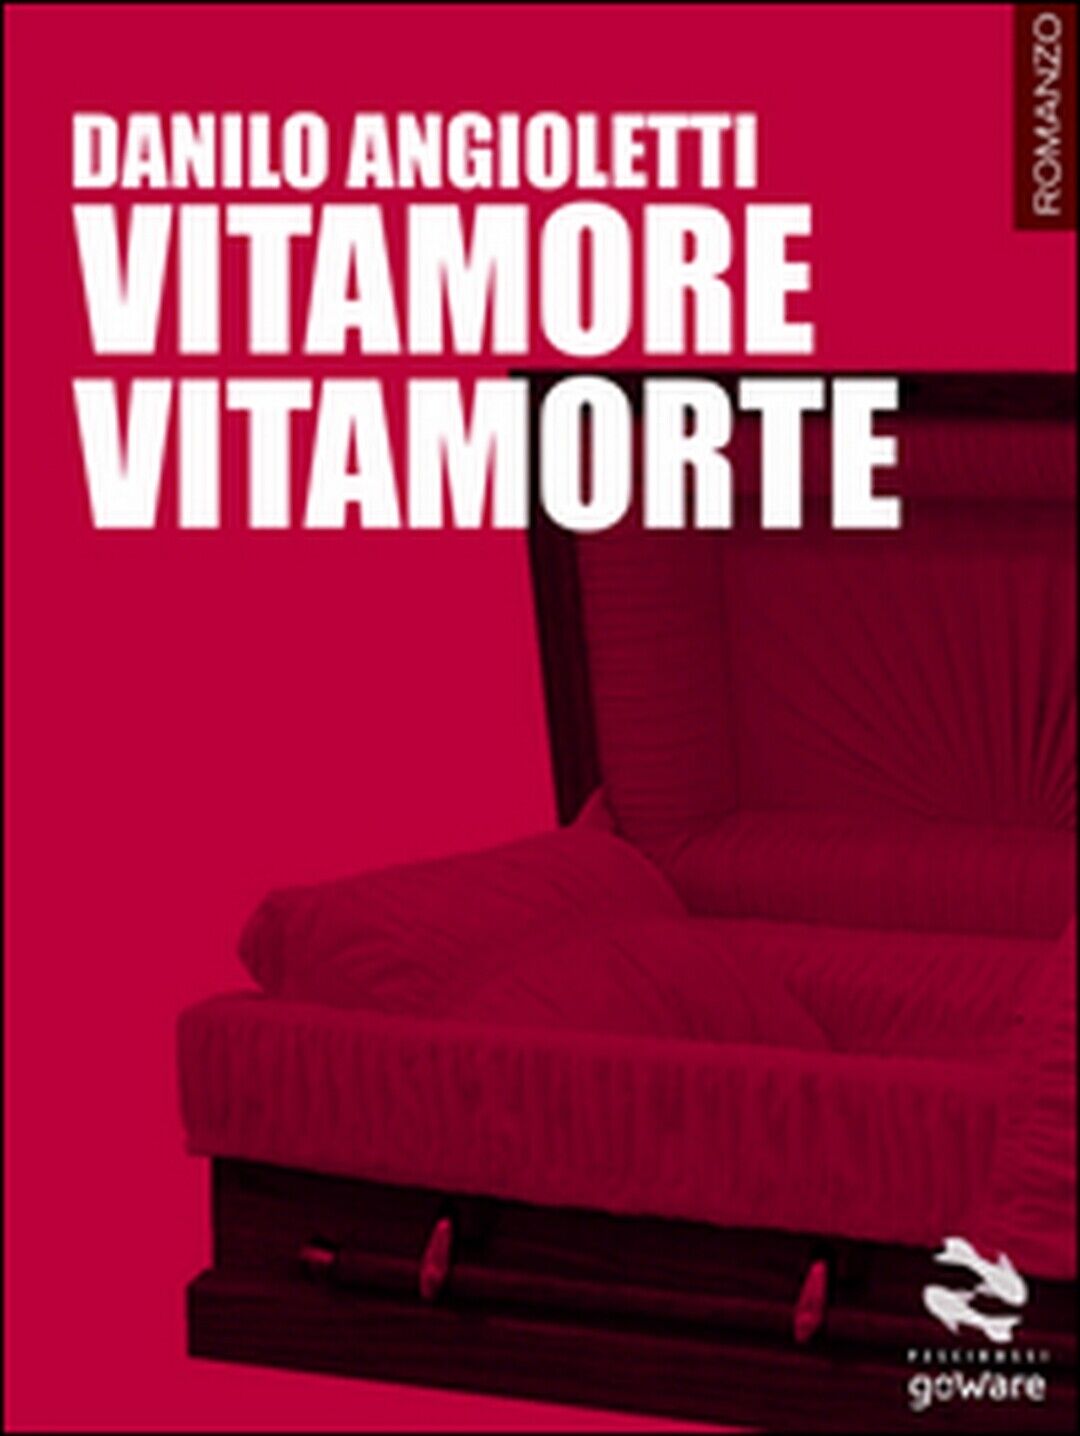 Vitamore vitamorte  di Danilo Angioletti,  2015,  Goware